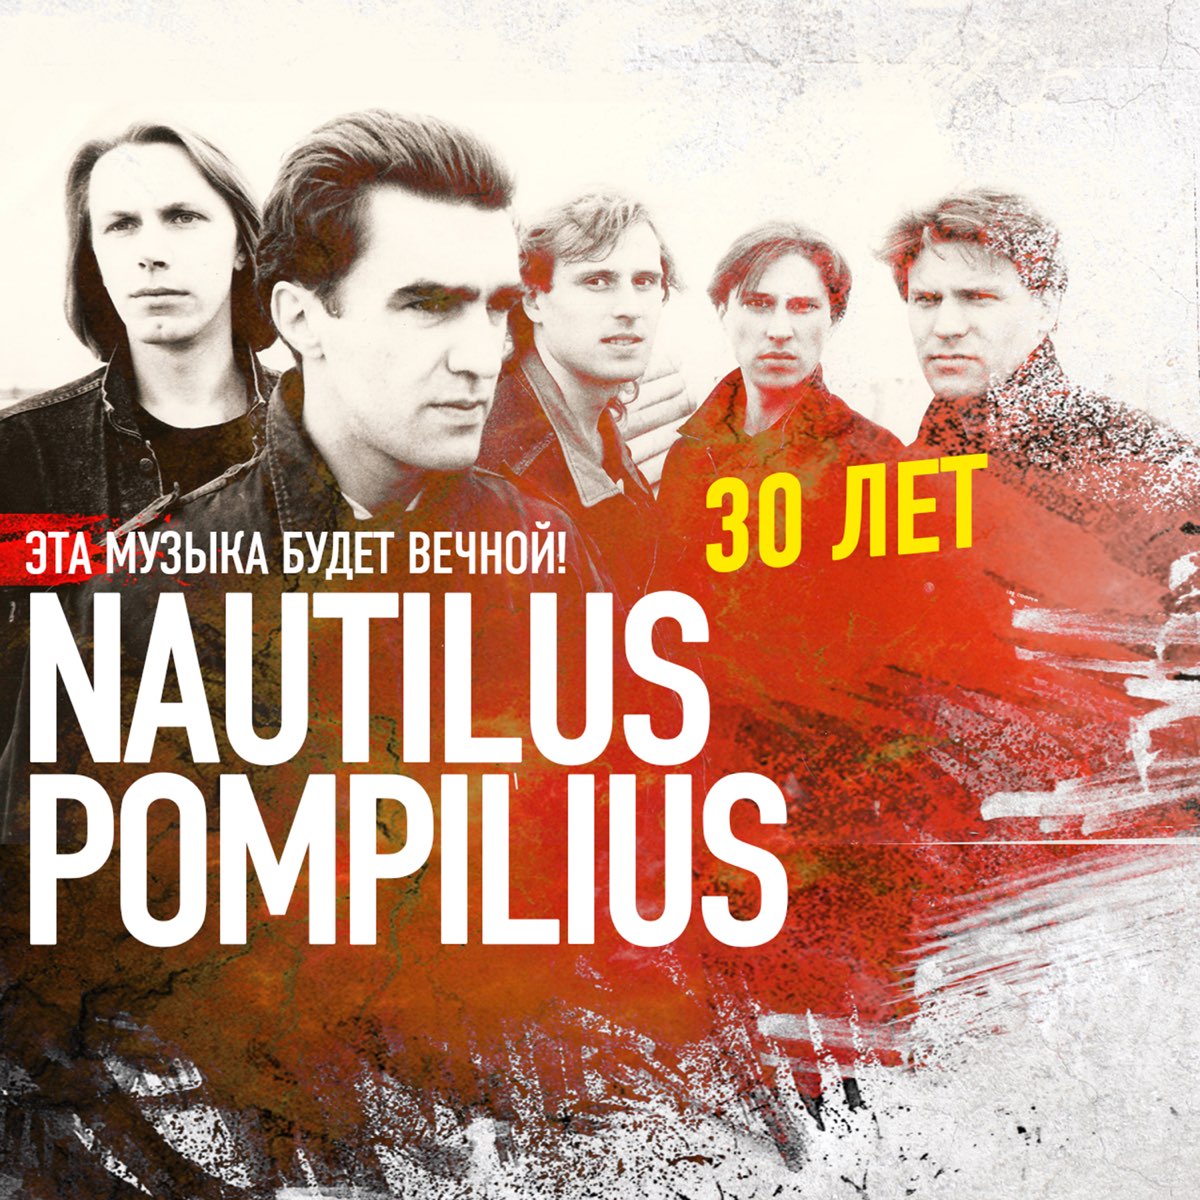 Бывшие 1 музыка песни. Наутилус Помпилиус. Наутилус группа. Наутилус 1992. Группа Nautilus Pompilius плакат.